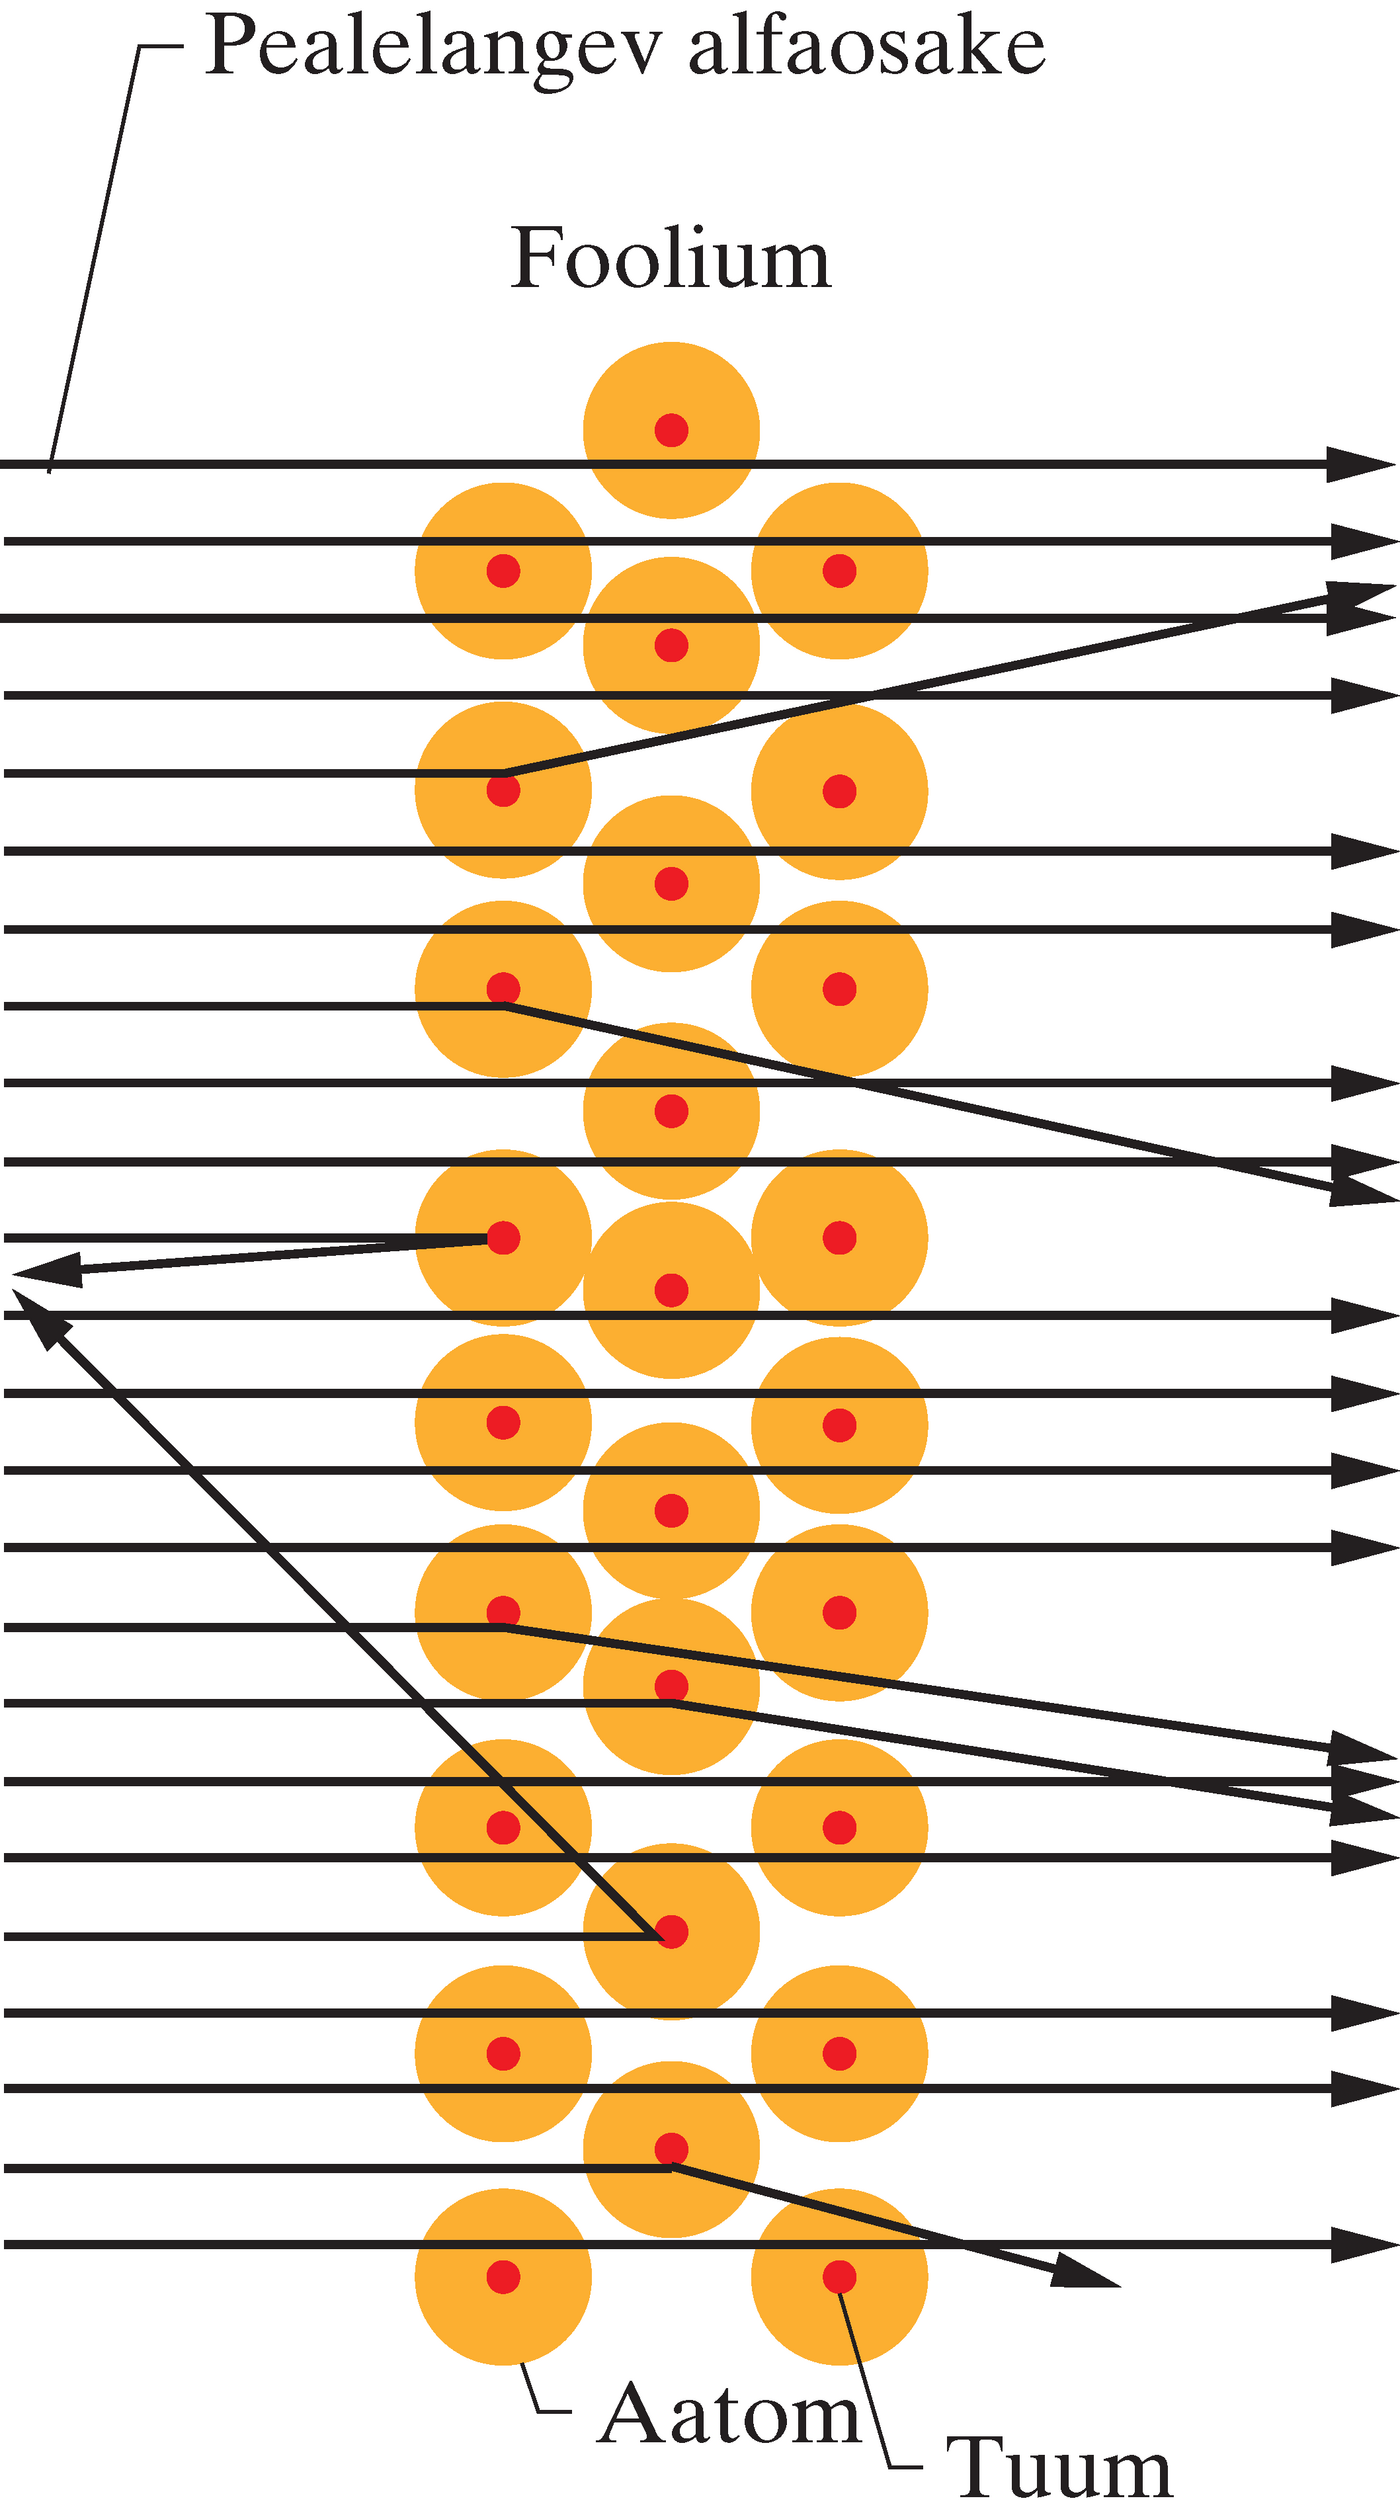 Langeva alfaosakese hajumisnurk sõltub sellest, kui lähedal on osakese liikumistee aatomituumale